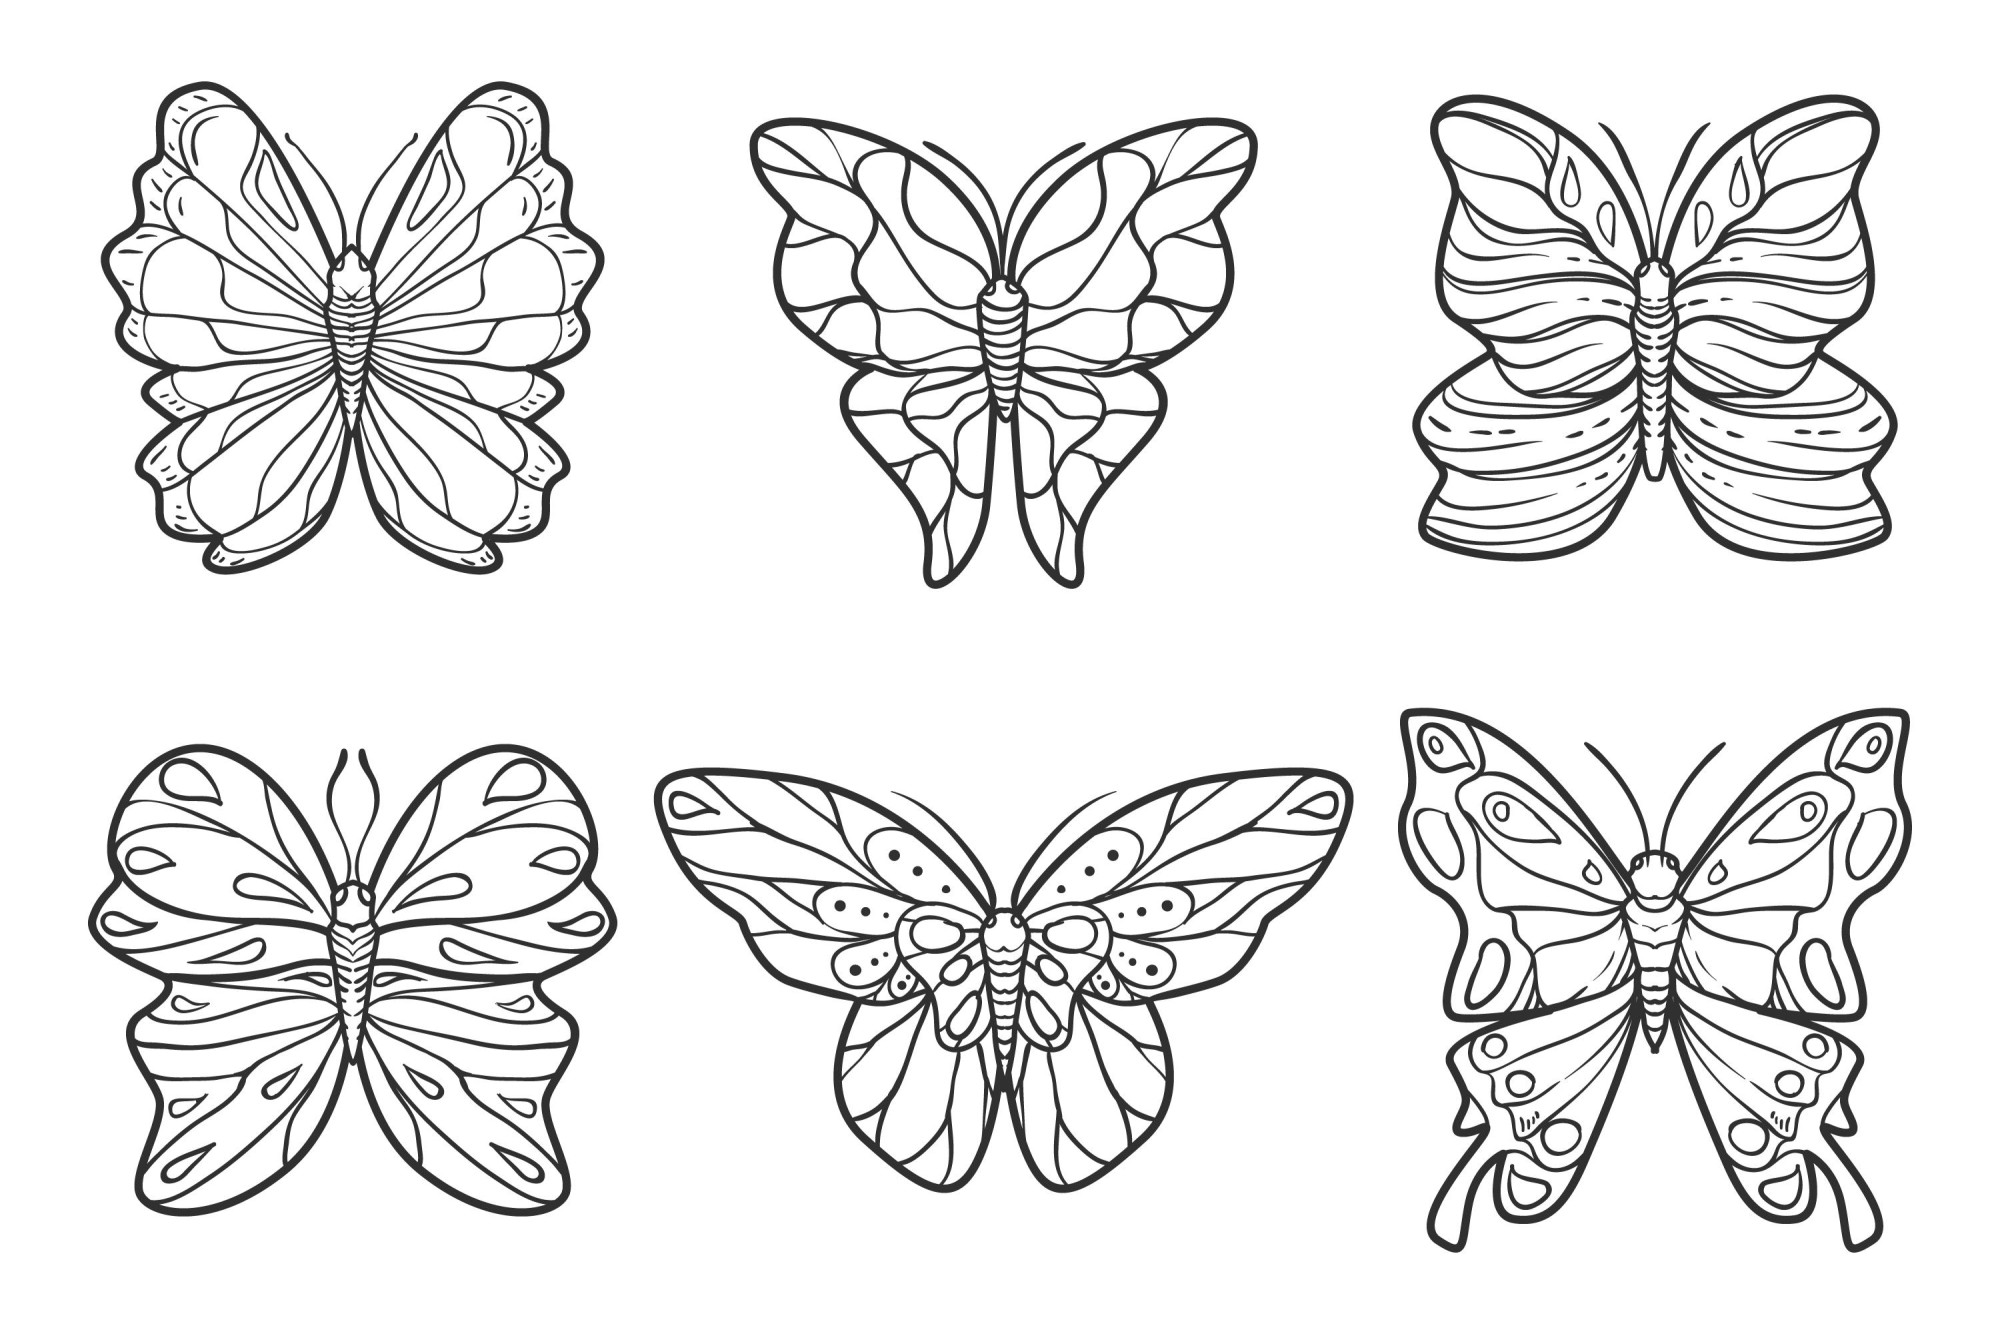 Раскраска для детей: коллекция из шести милых бабочек